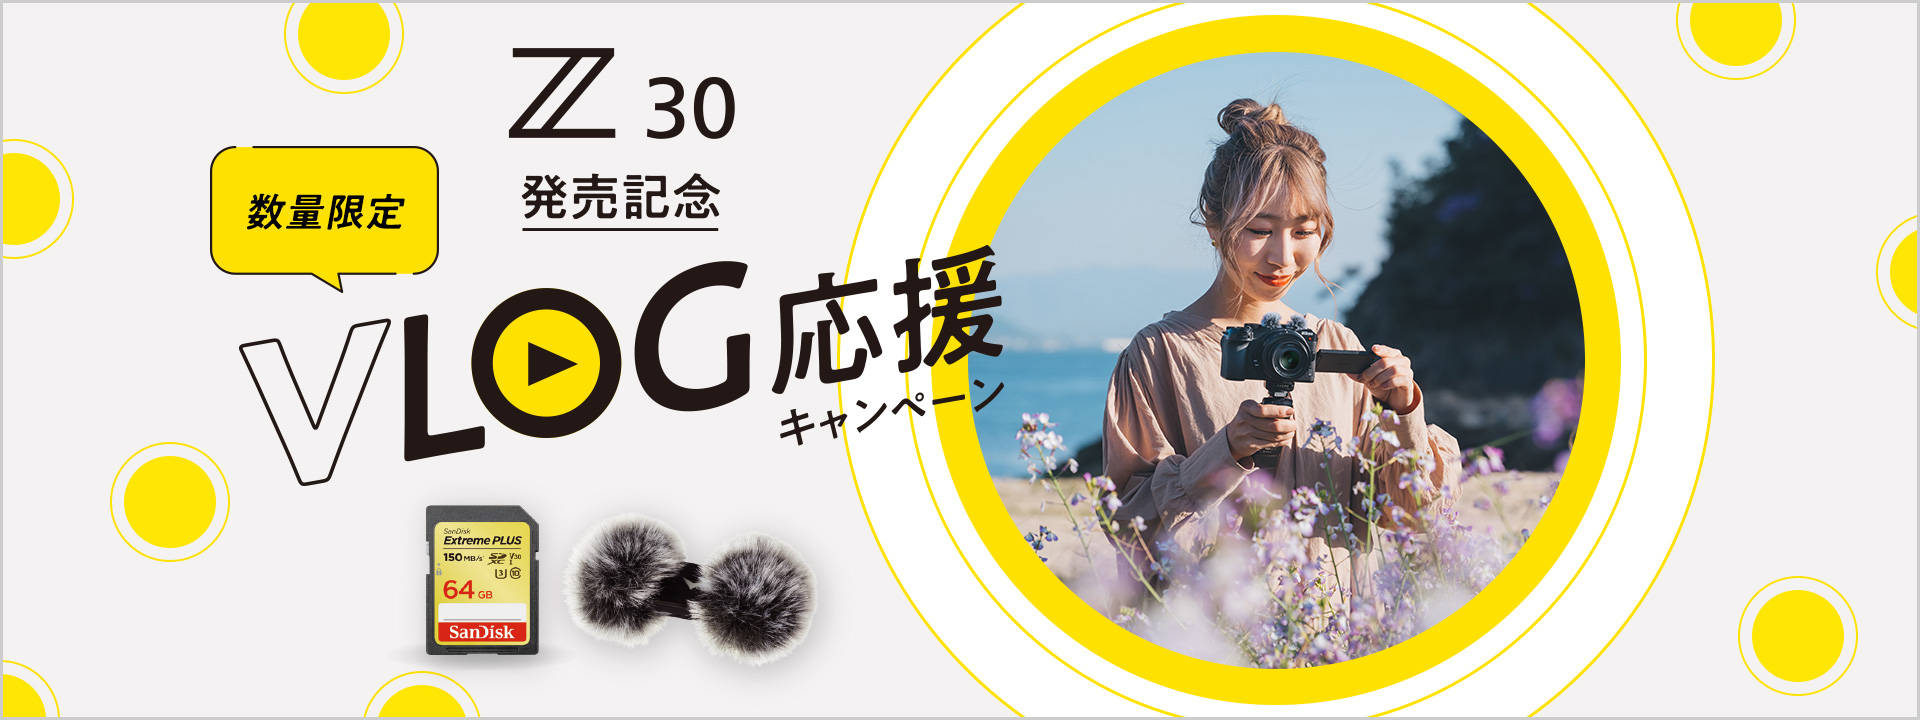 Z 30 発売記念 VLOG応援キャンペーン